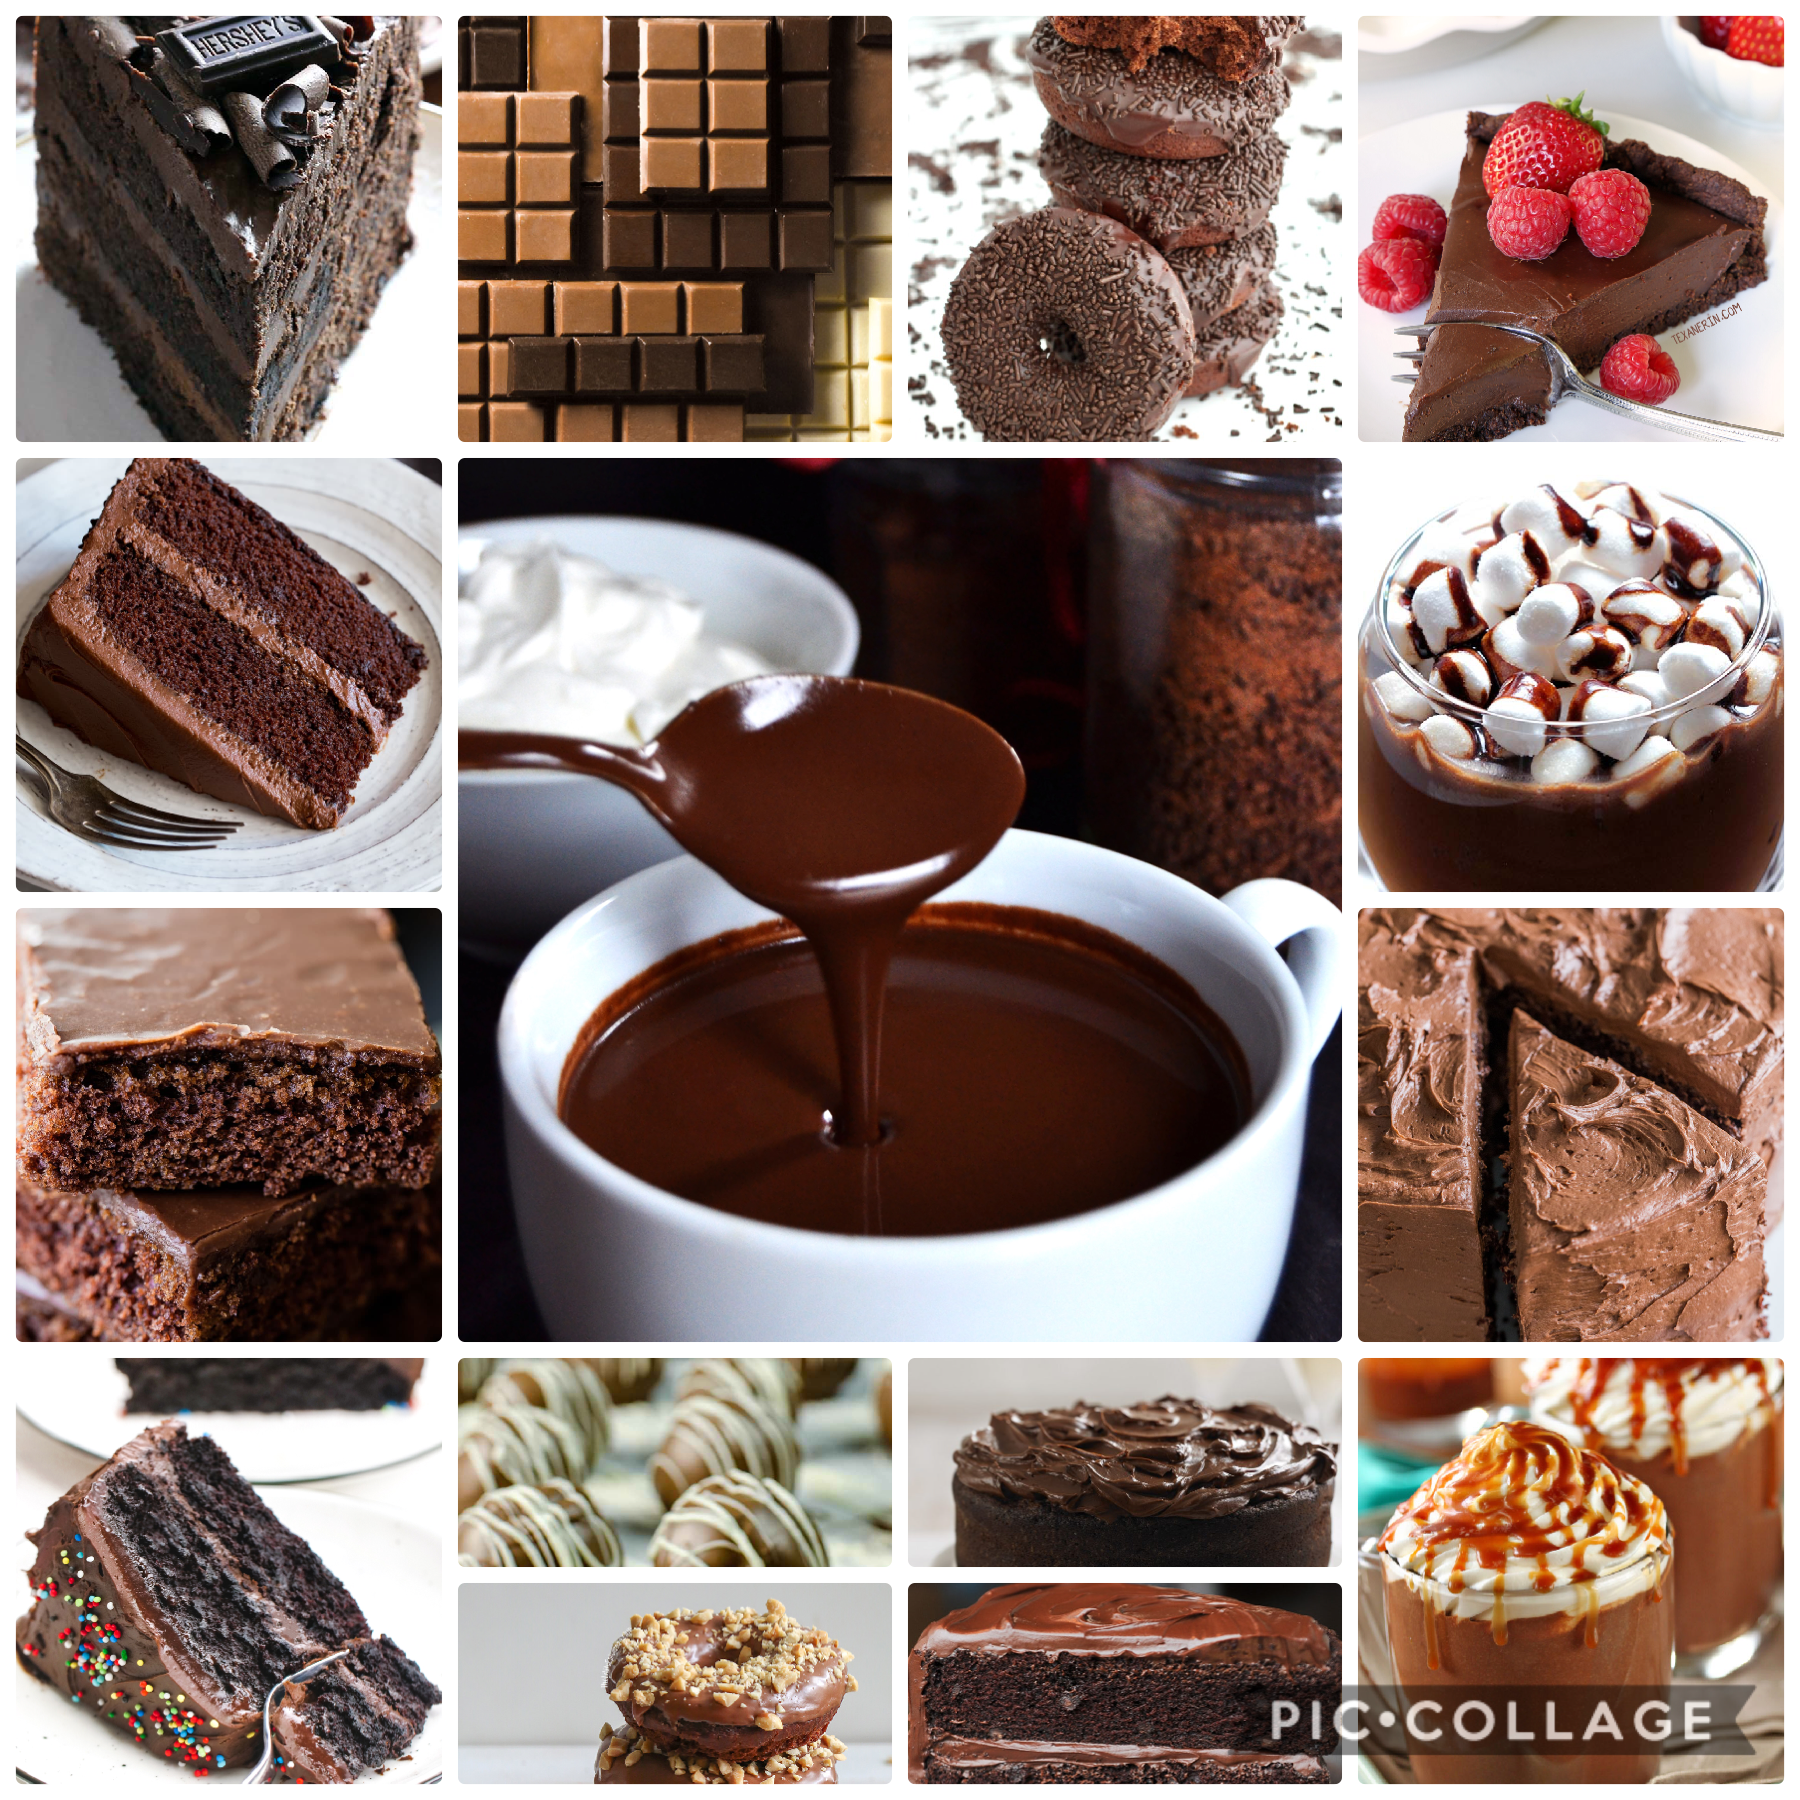 Do you like chocolate 🍫 